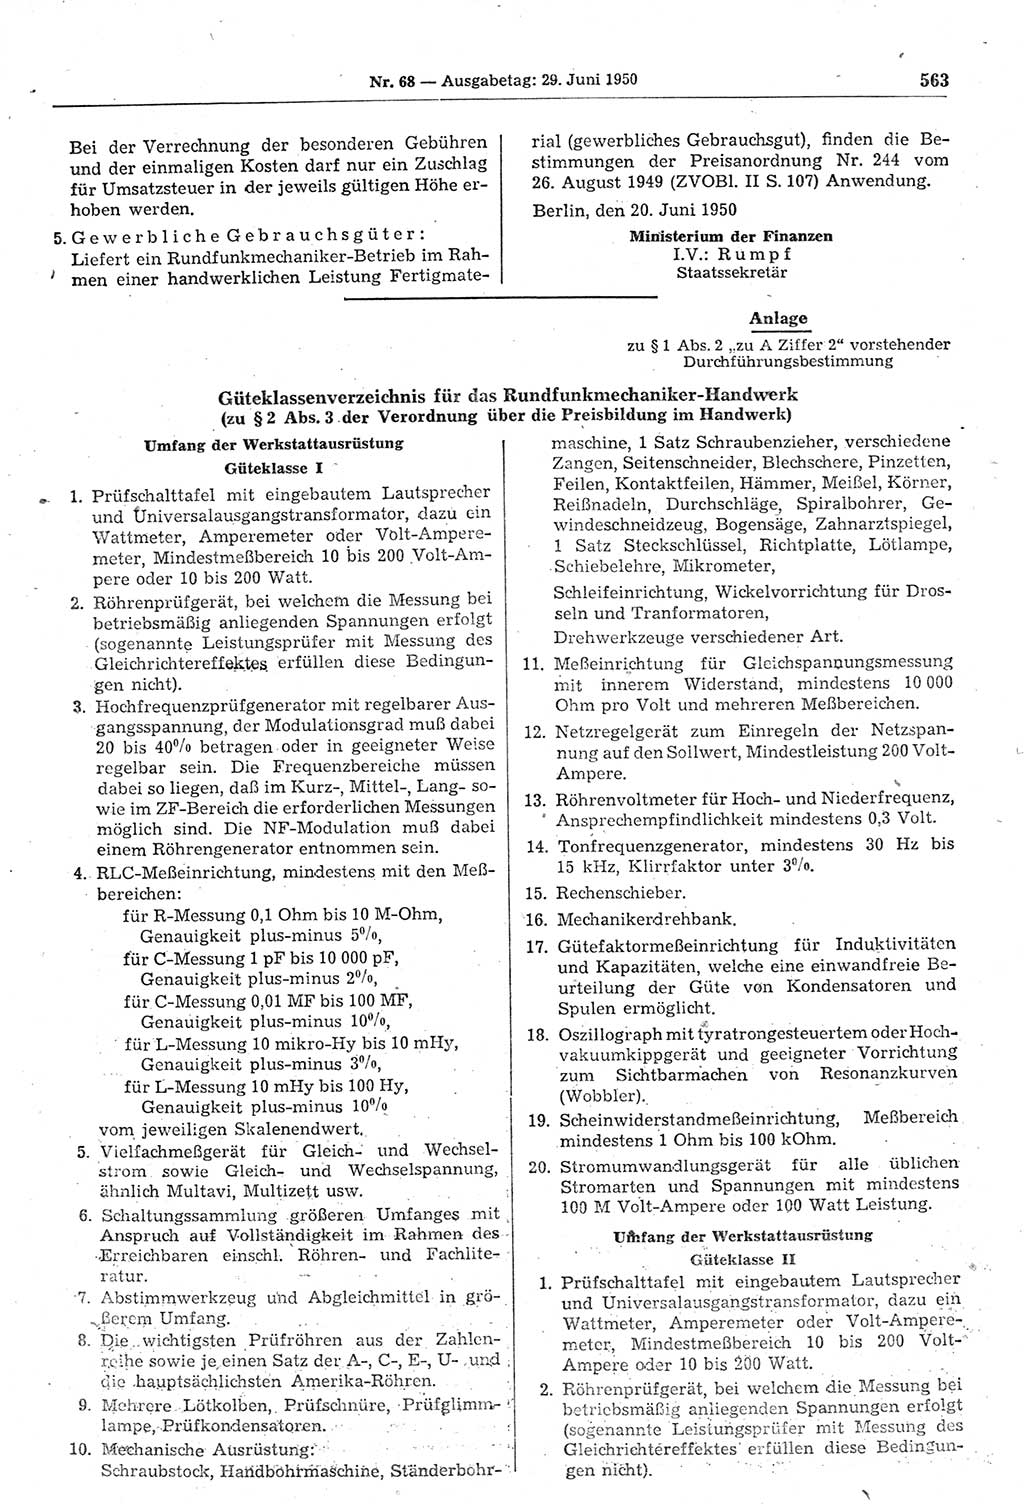 Gesetzblatt (GBl.) der Deutschen Demokratischen Republik (DDR) 1950, Seite 563 (GBl. DDR 1950, S. 563)